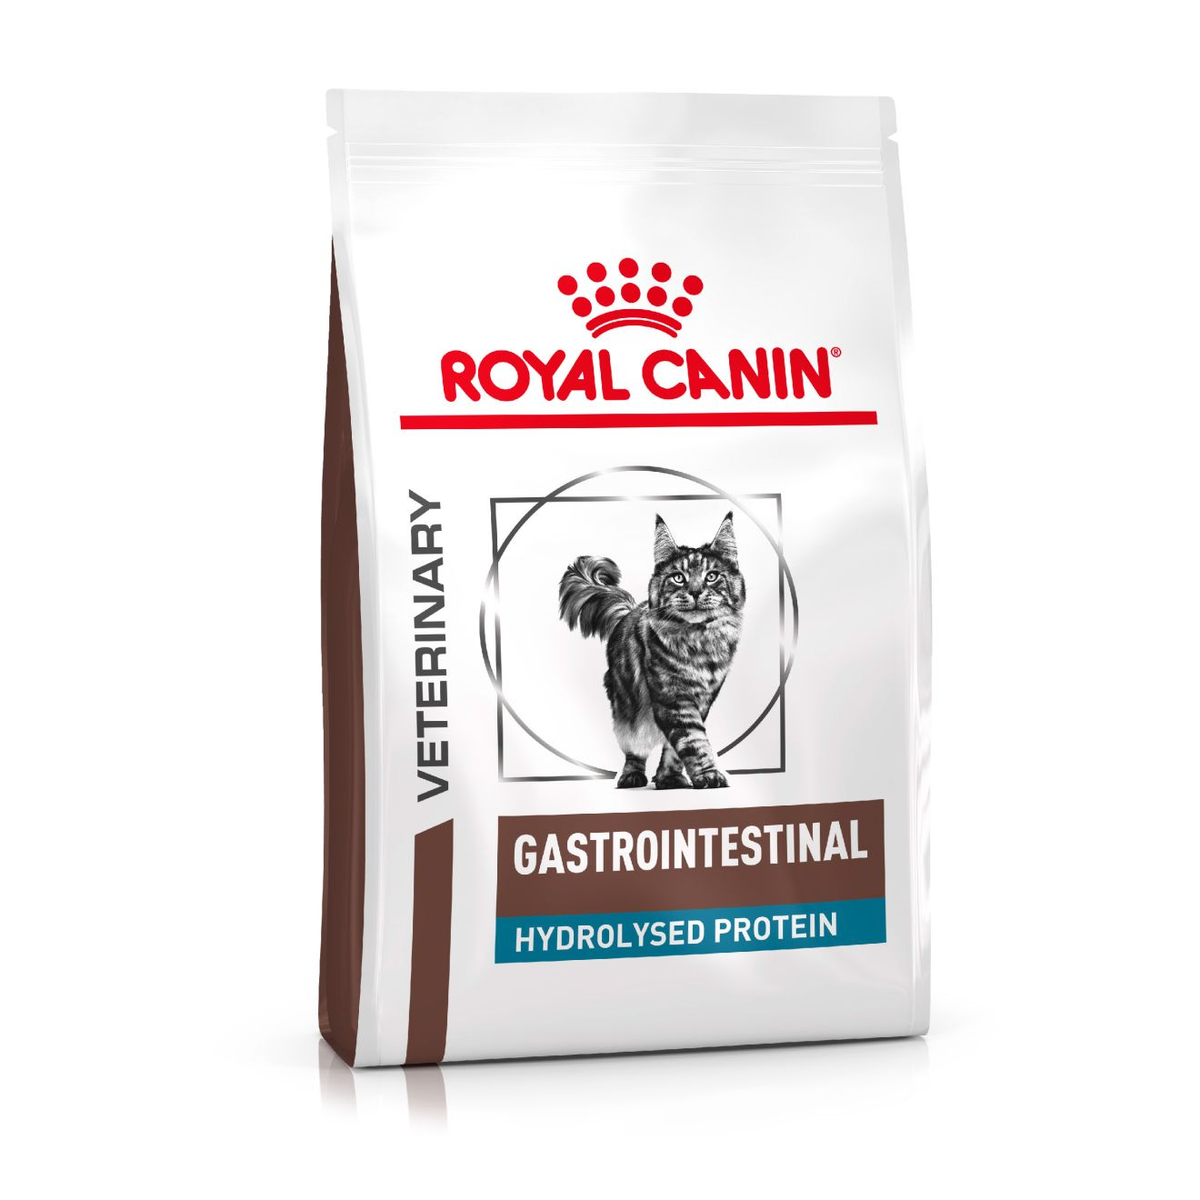 Royal Canin Gastrointestinal Hydrolyzed Protein Cat food 17.6lbs